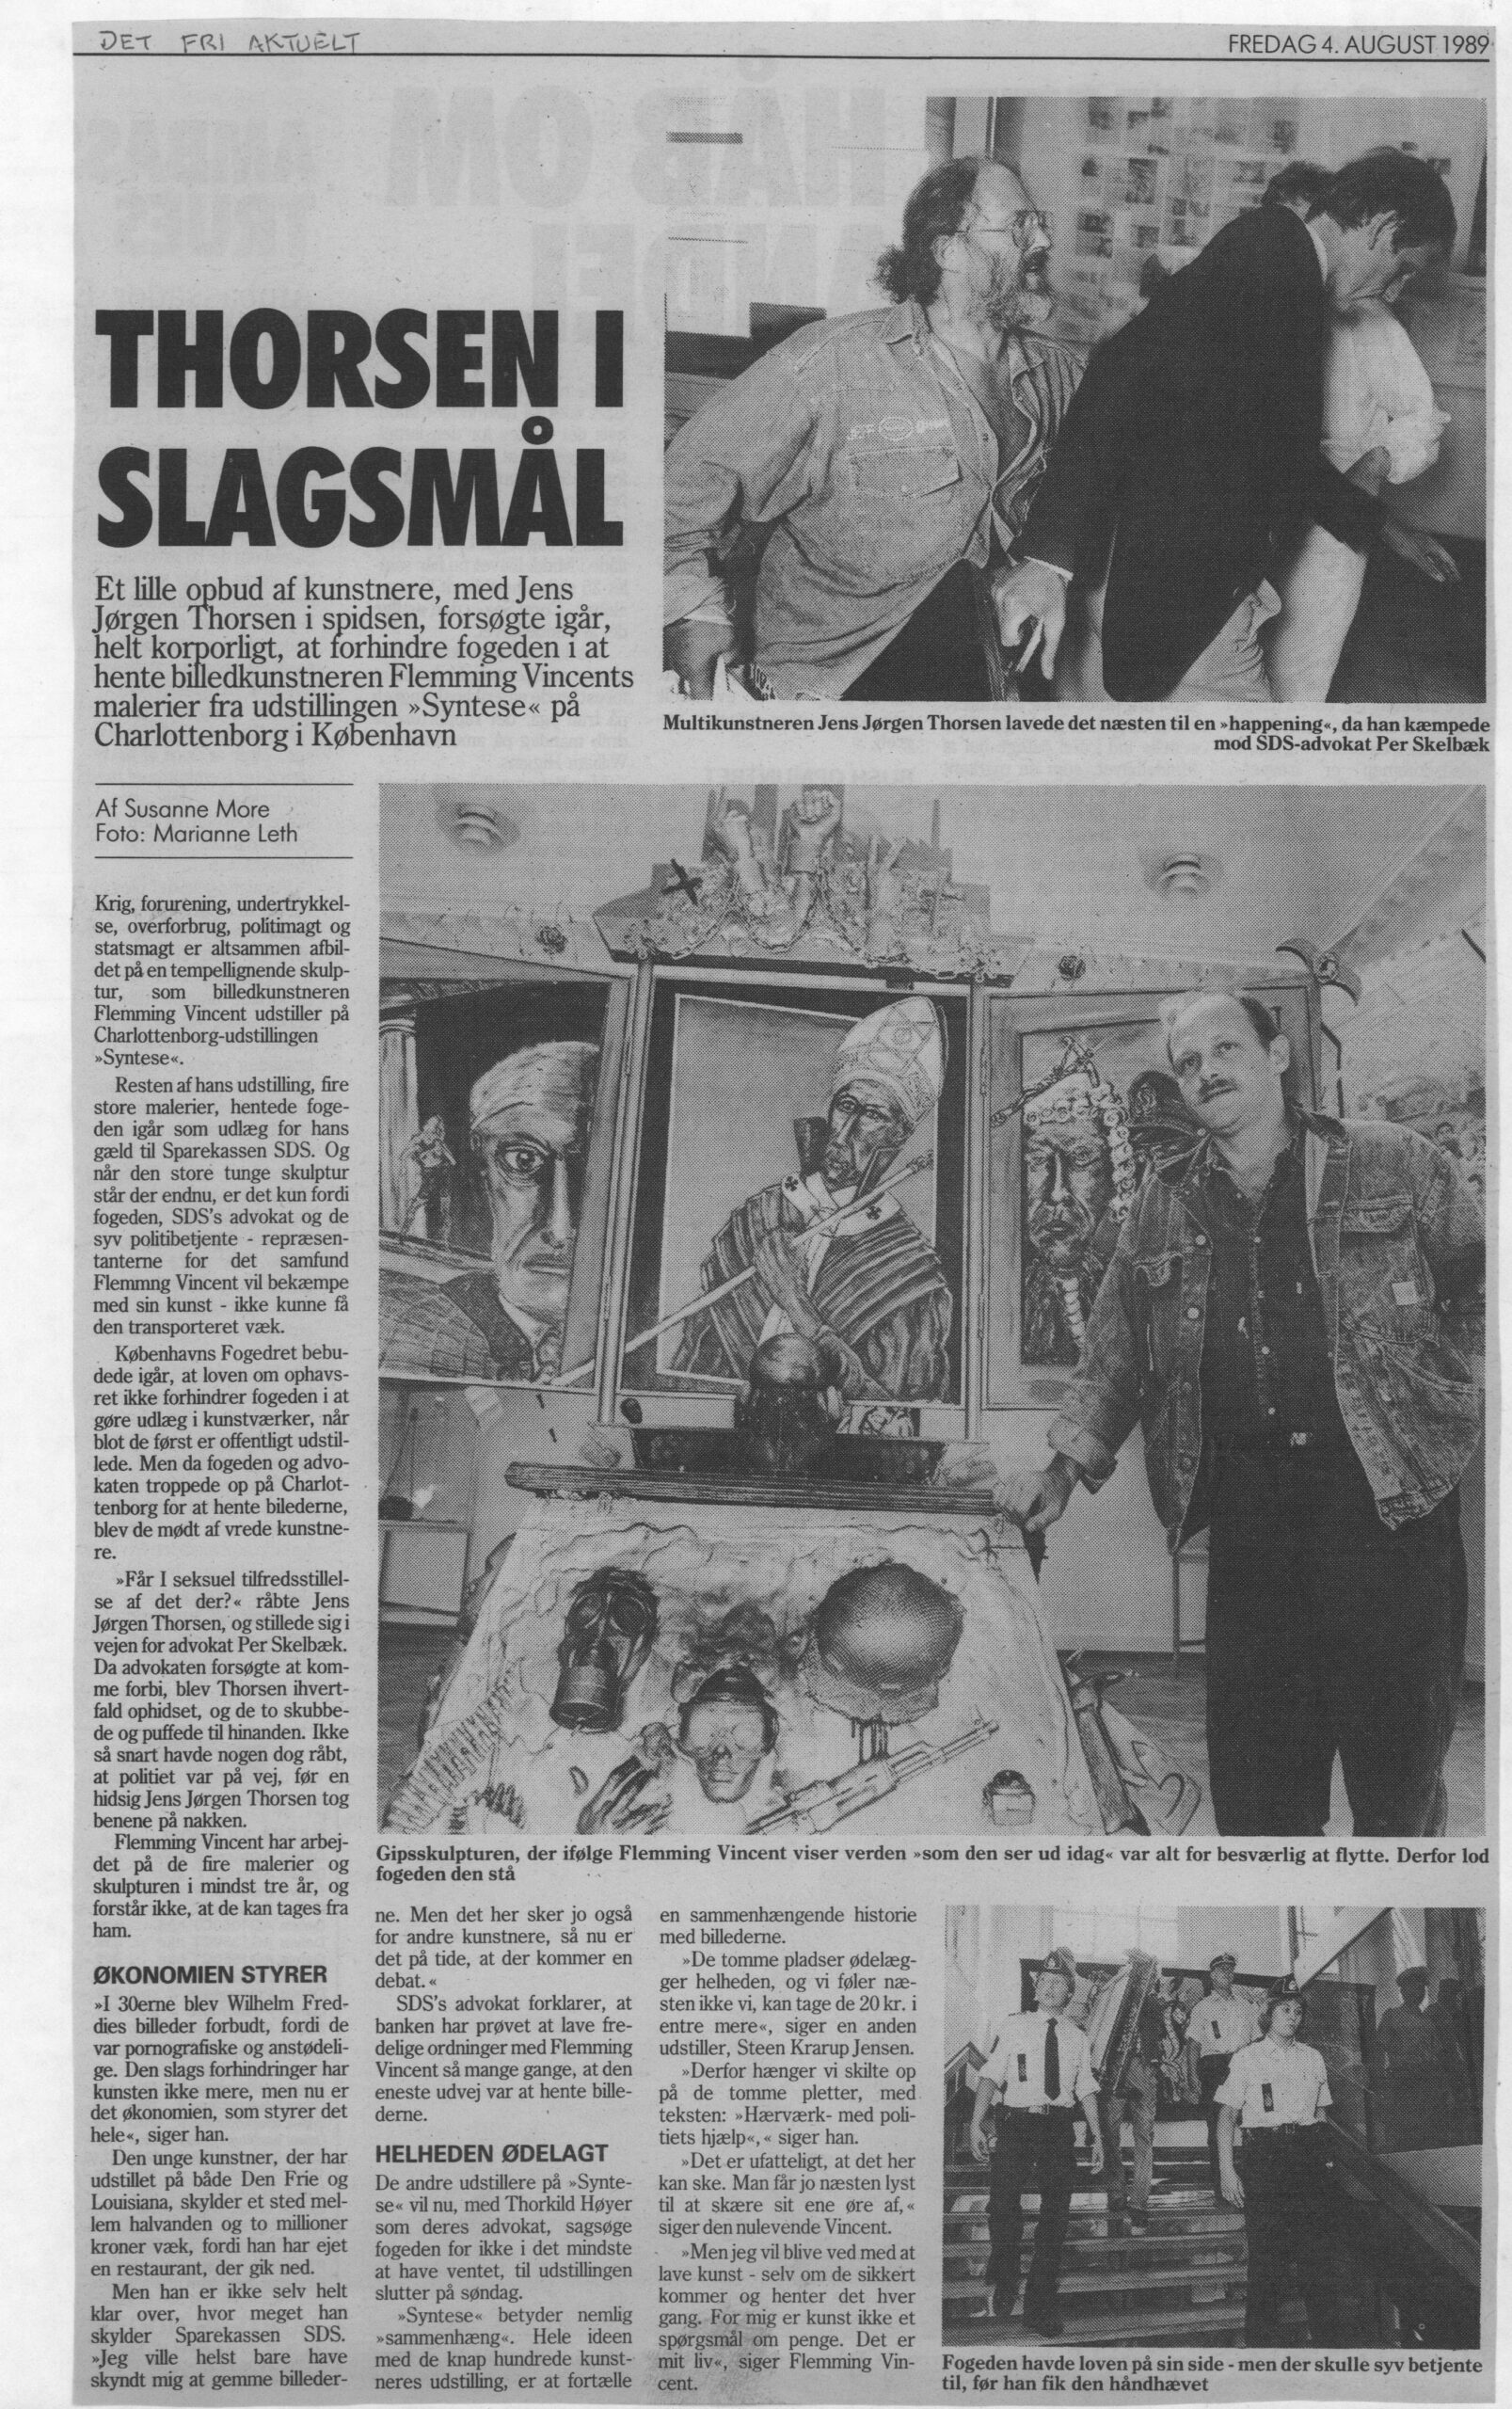 Thorsen i slagsmål. Omtale (Retssag. Den lange rejse. Charlottenborg 1989, København). Susanne More. Det Fri Aktuelt.